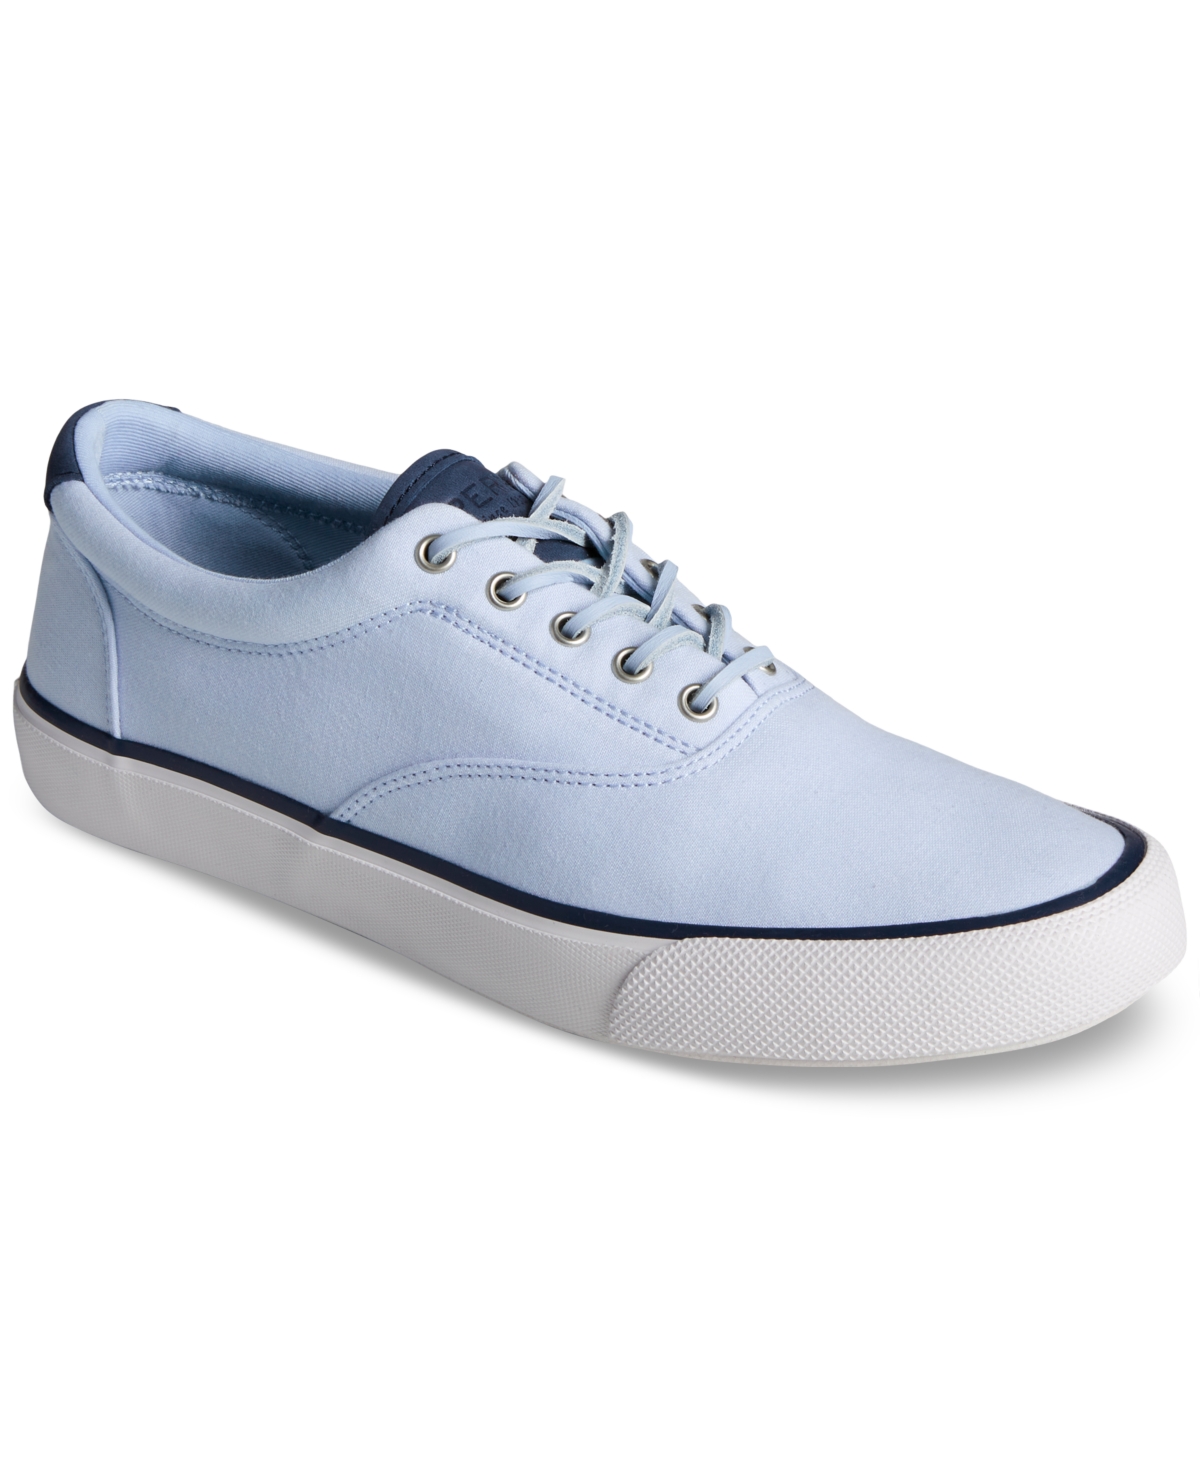 Men's Striper Ii Cvo Seacycled Sneakers - Light Pastel Blue